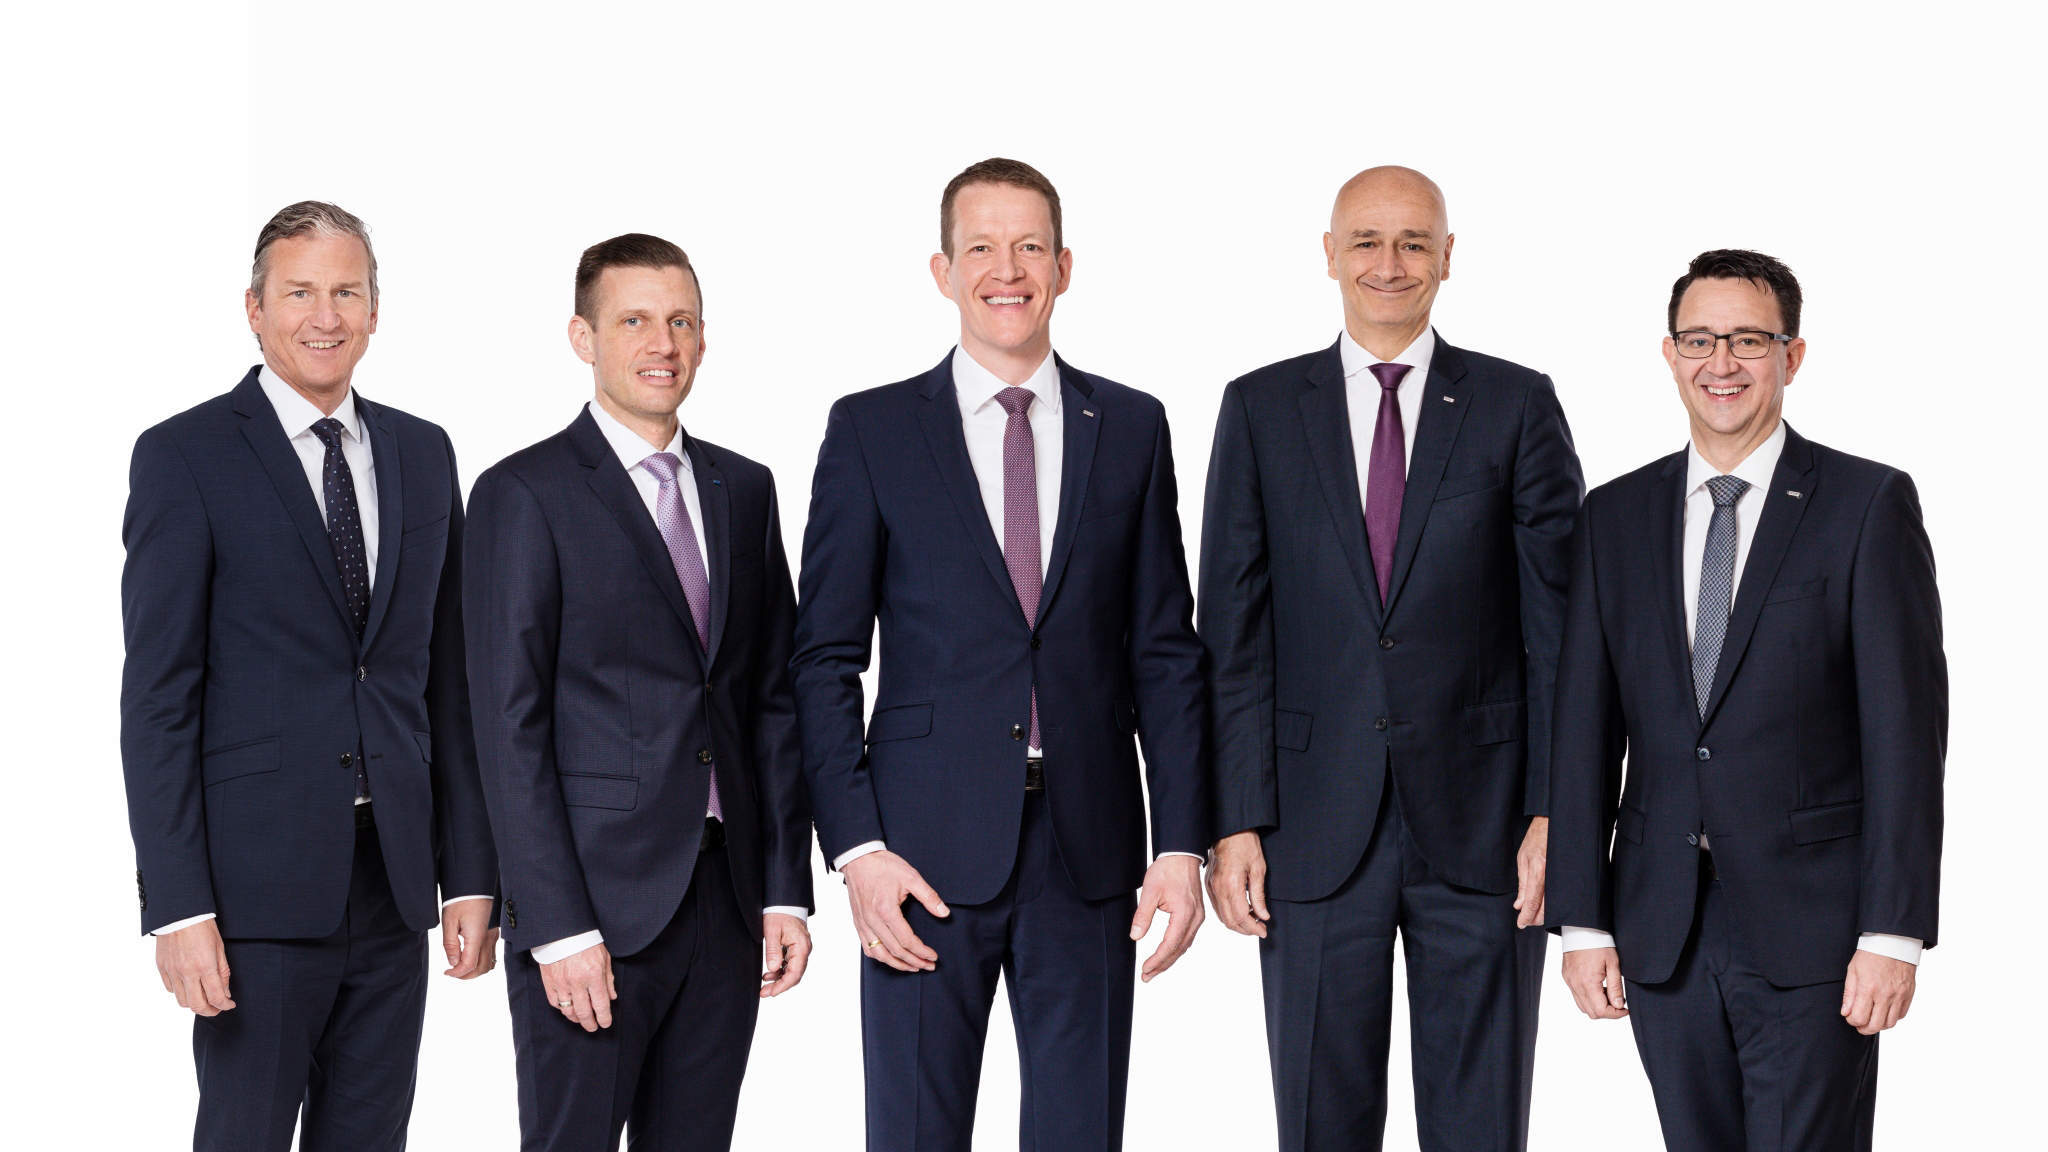 La nouvelle génération au sein du conseil d'administration de DACHSER : Robert Erni, Alexander Tonn, Burkhard Eling, Edoardo Podestà et Stefan Hohm (de gauche à droite).